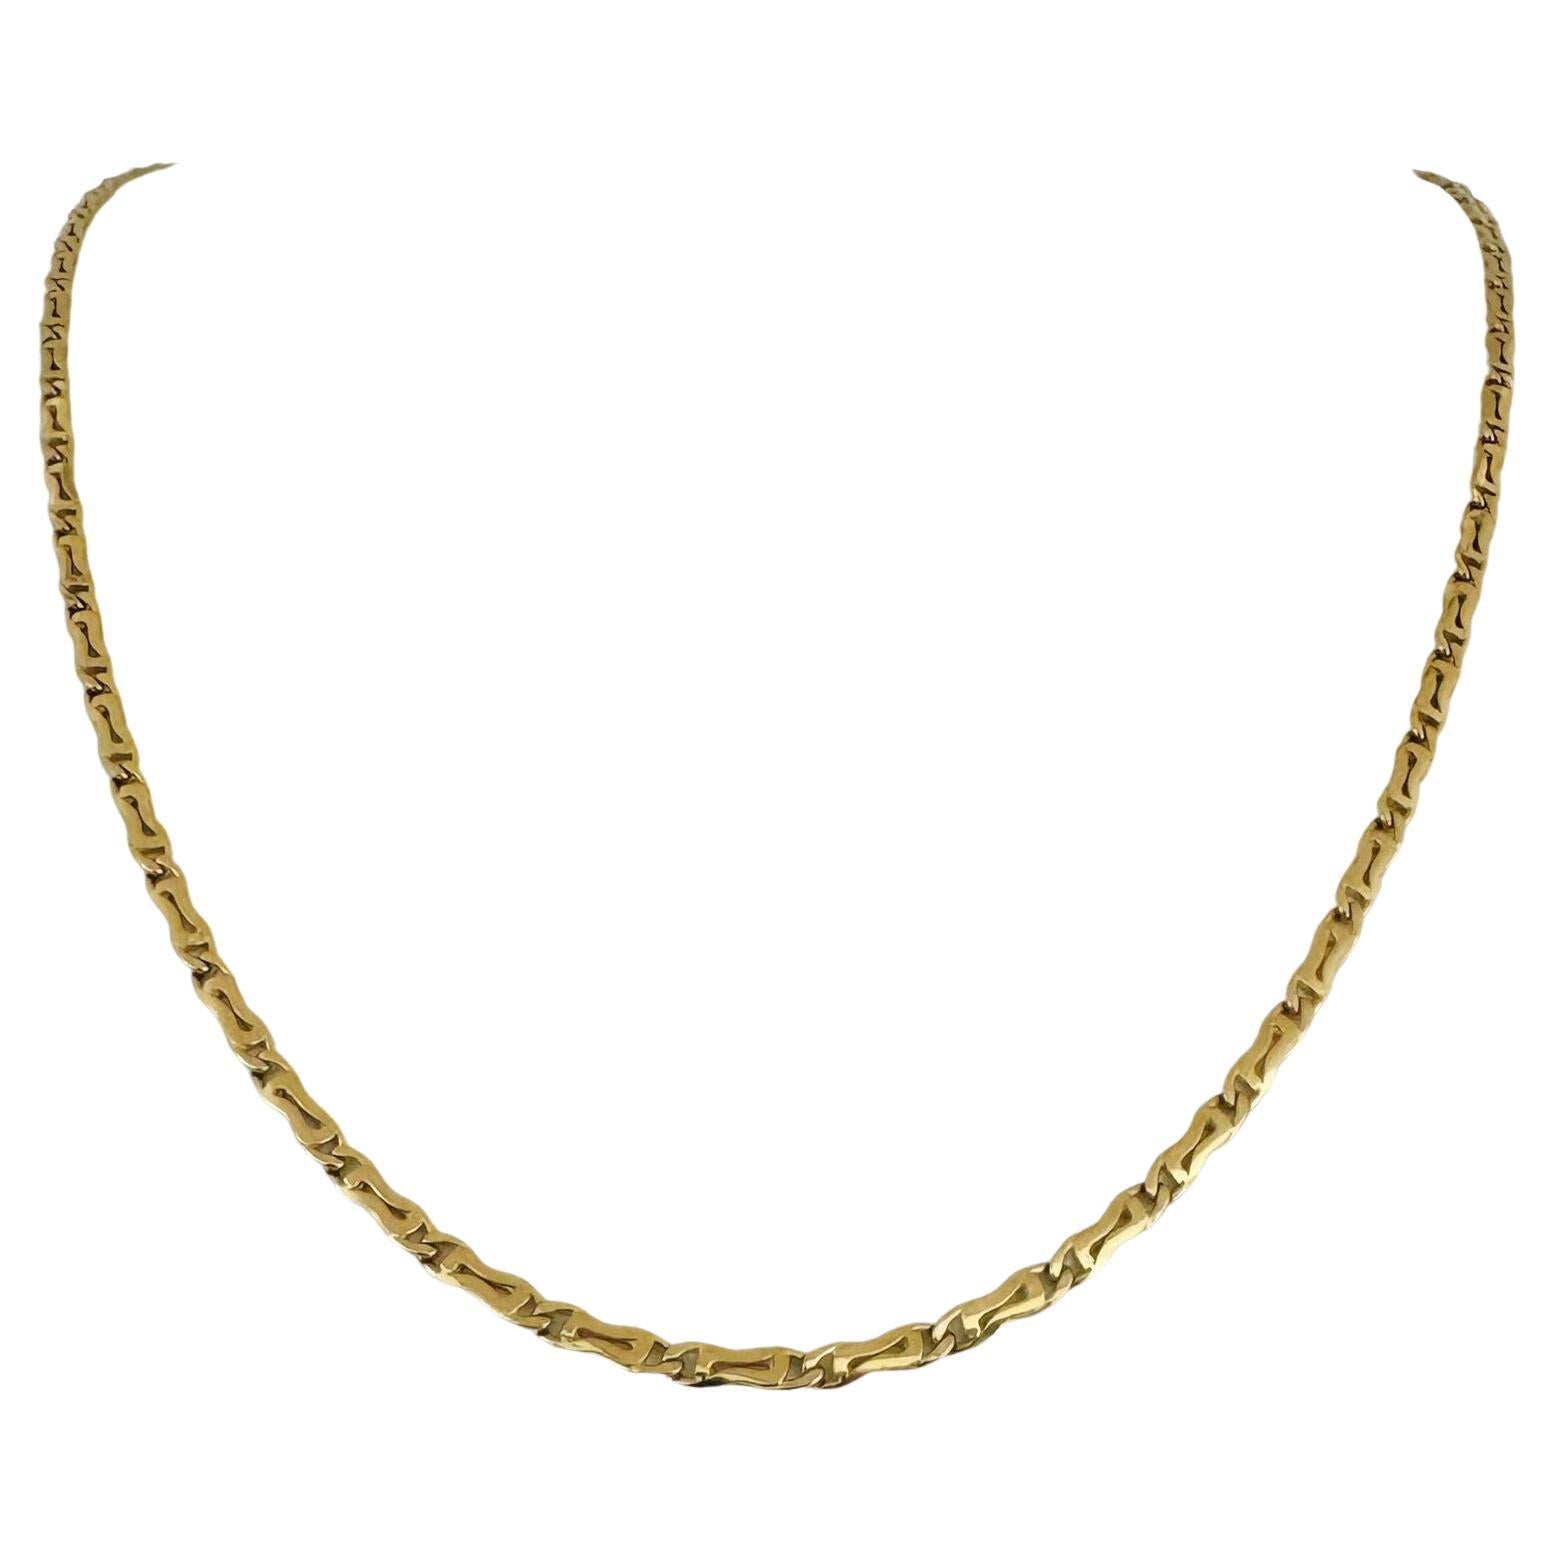 18 Karat Gelbgold Halb massive Fancy Gliederkette Halskette Italien